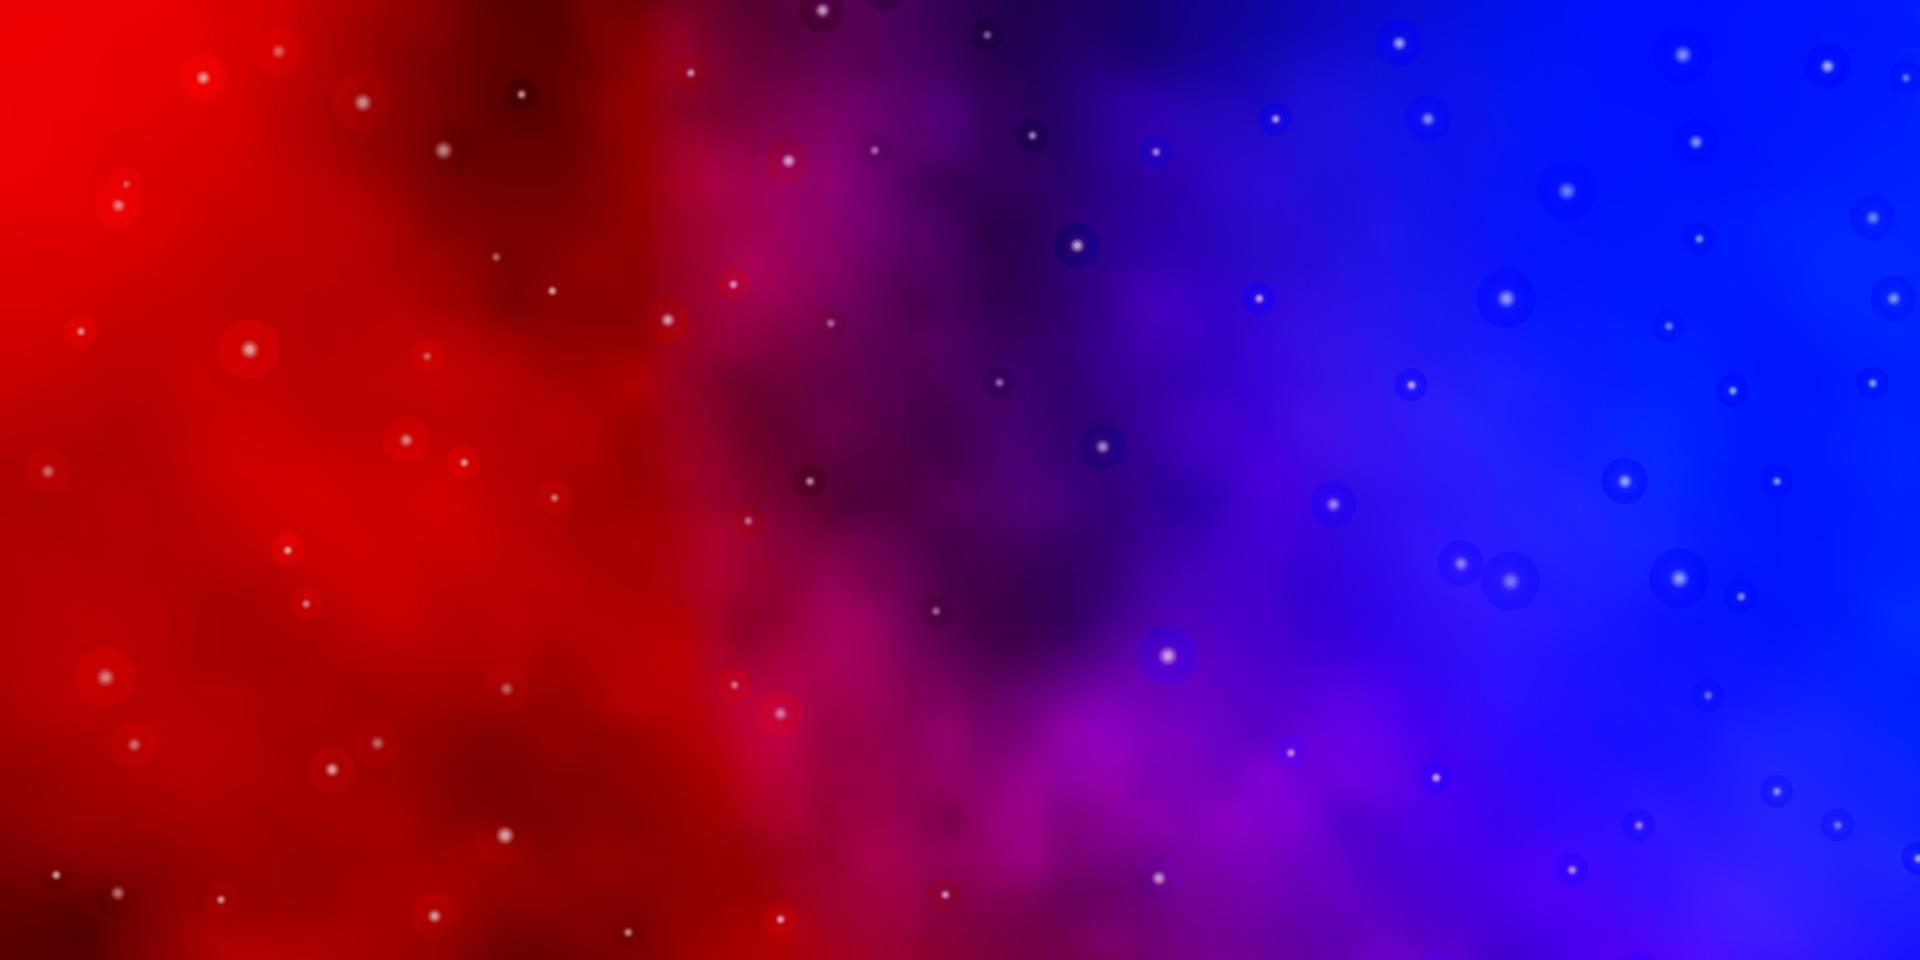 modelo de vetor azul e vermelho claro com estrelas de néon.